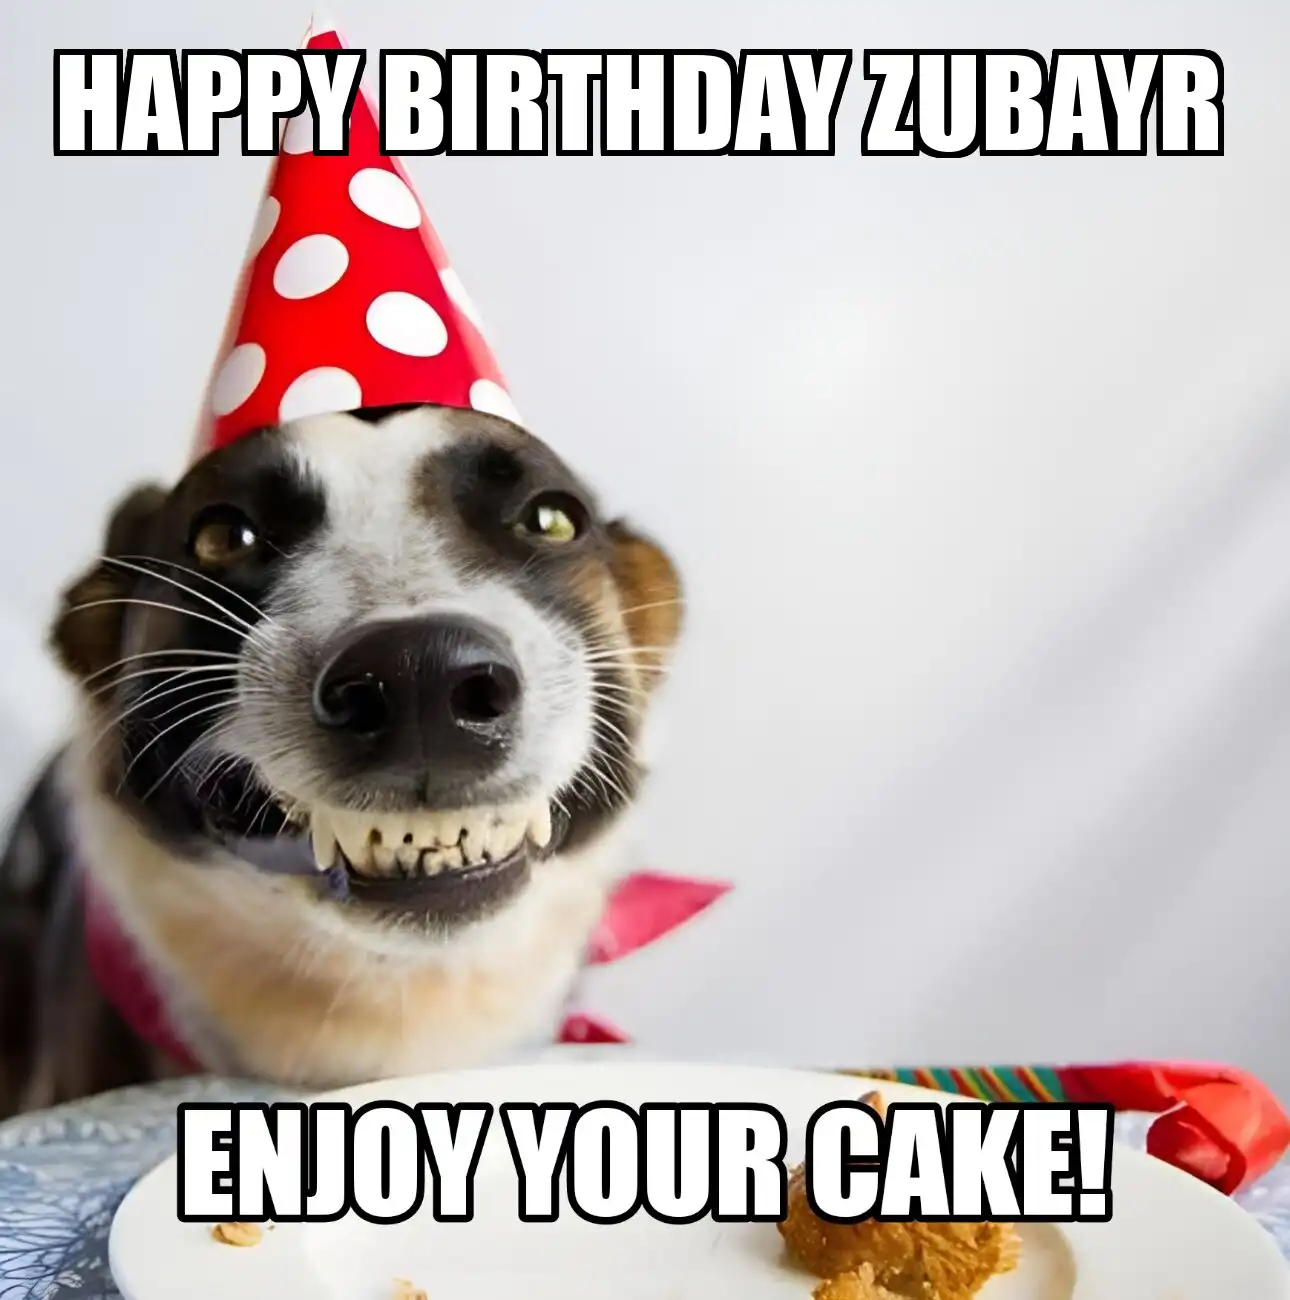 Happy Birthday Zubayr Enjoy Your Cake Dog Meme